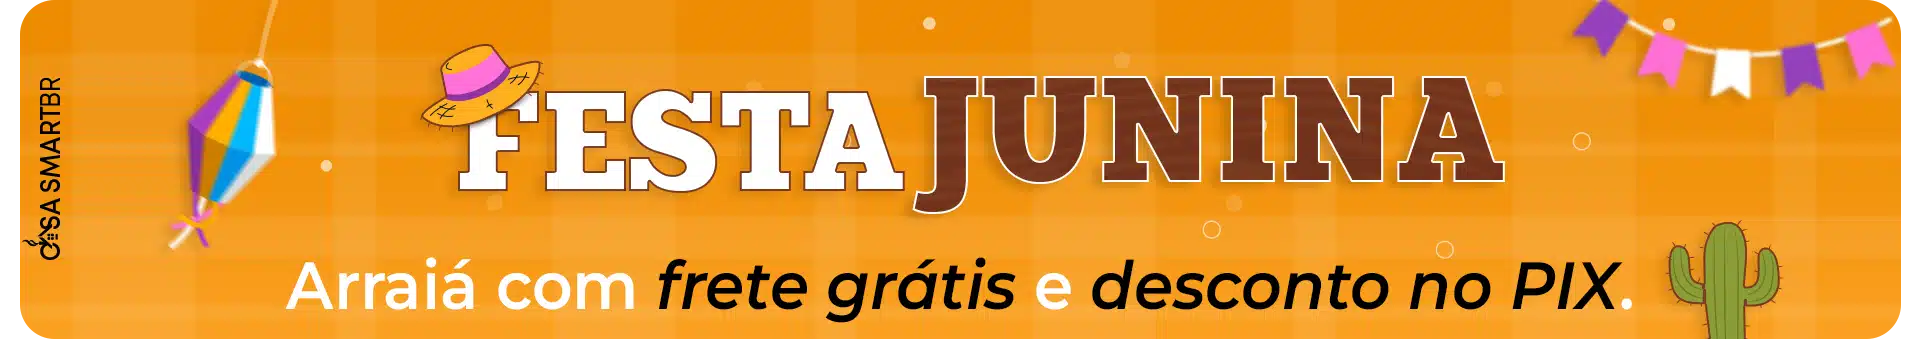 Banner de categorias Festa Junina - Arraiá com Frete Grátis e Desconto PIX - Casa Smart BR